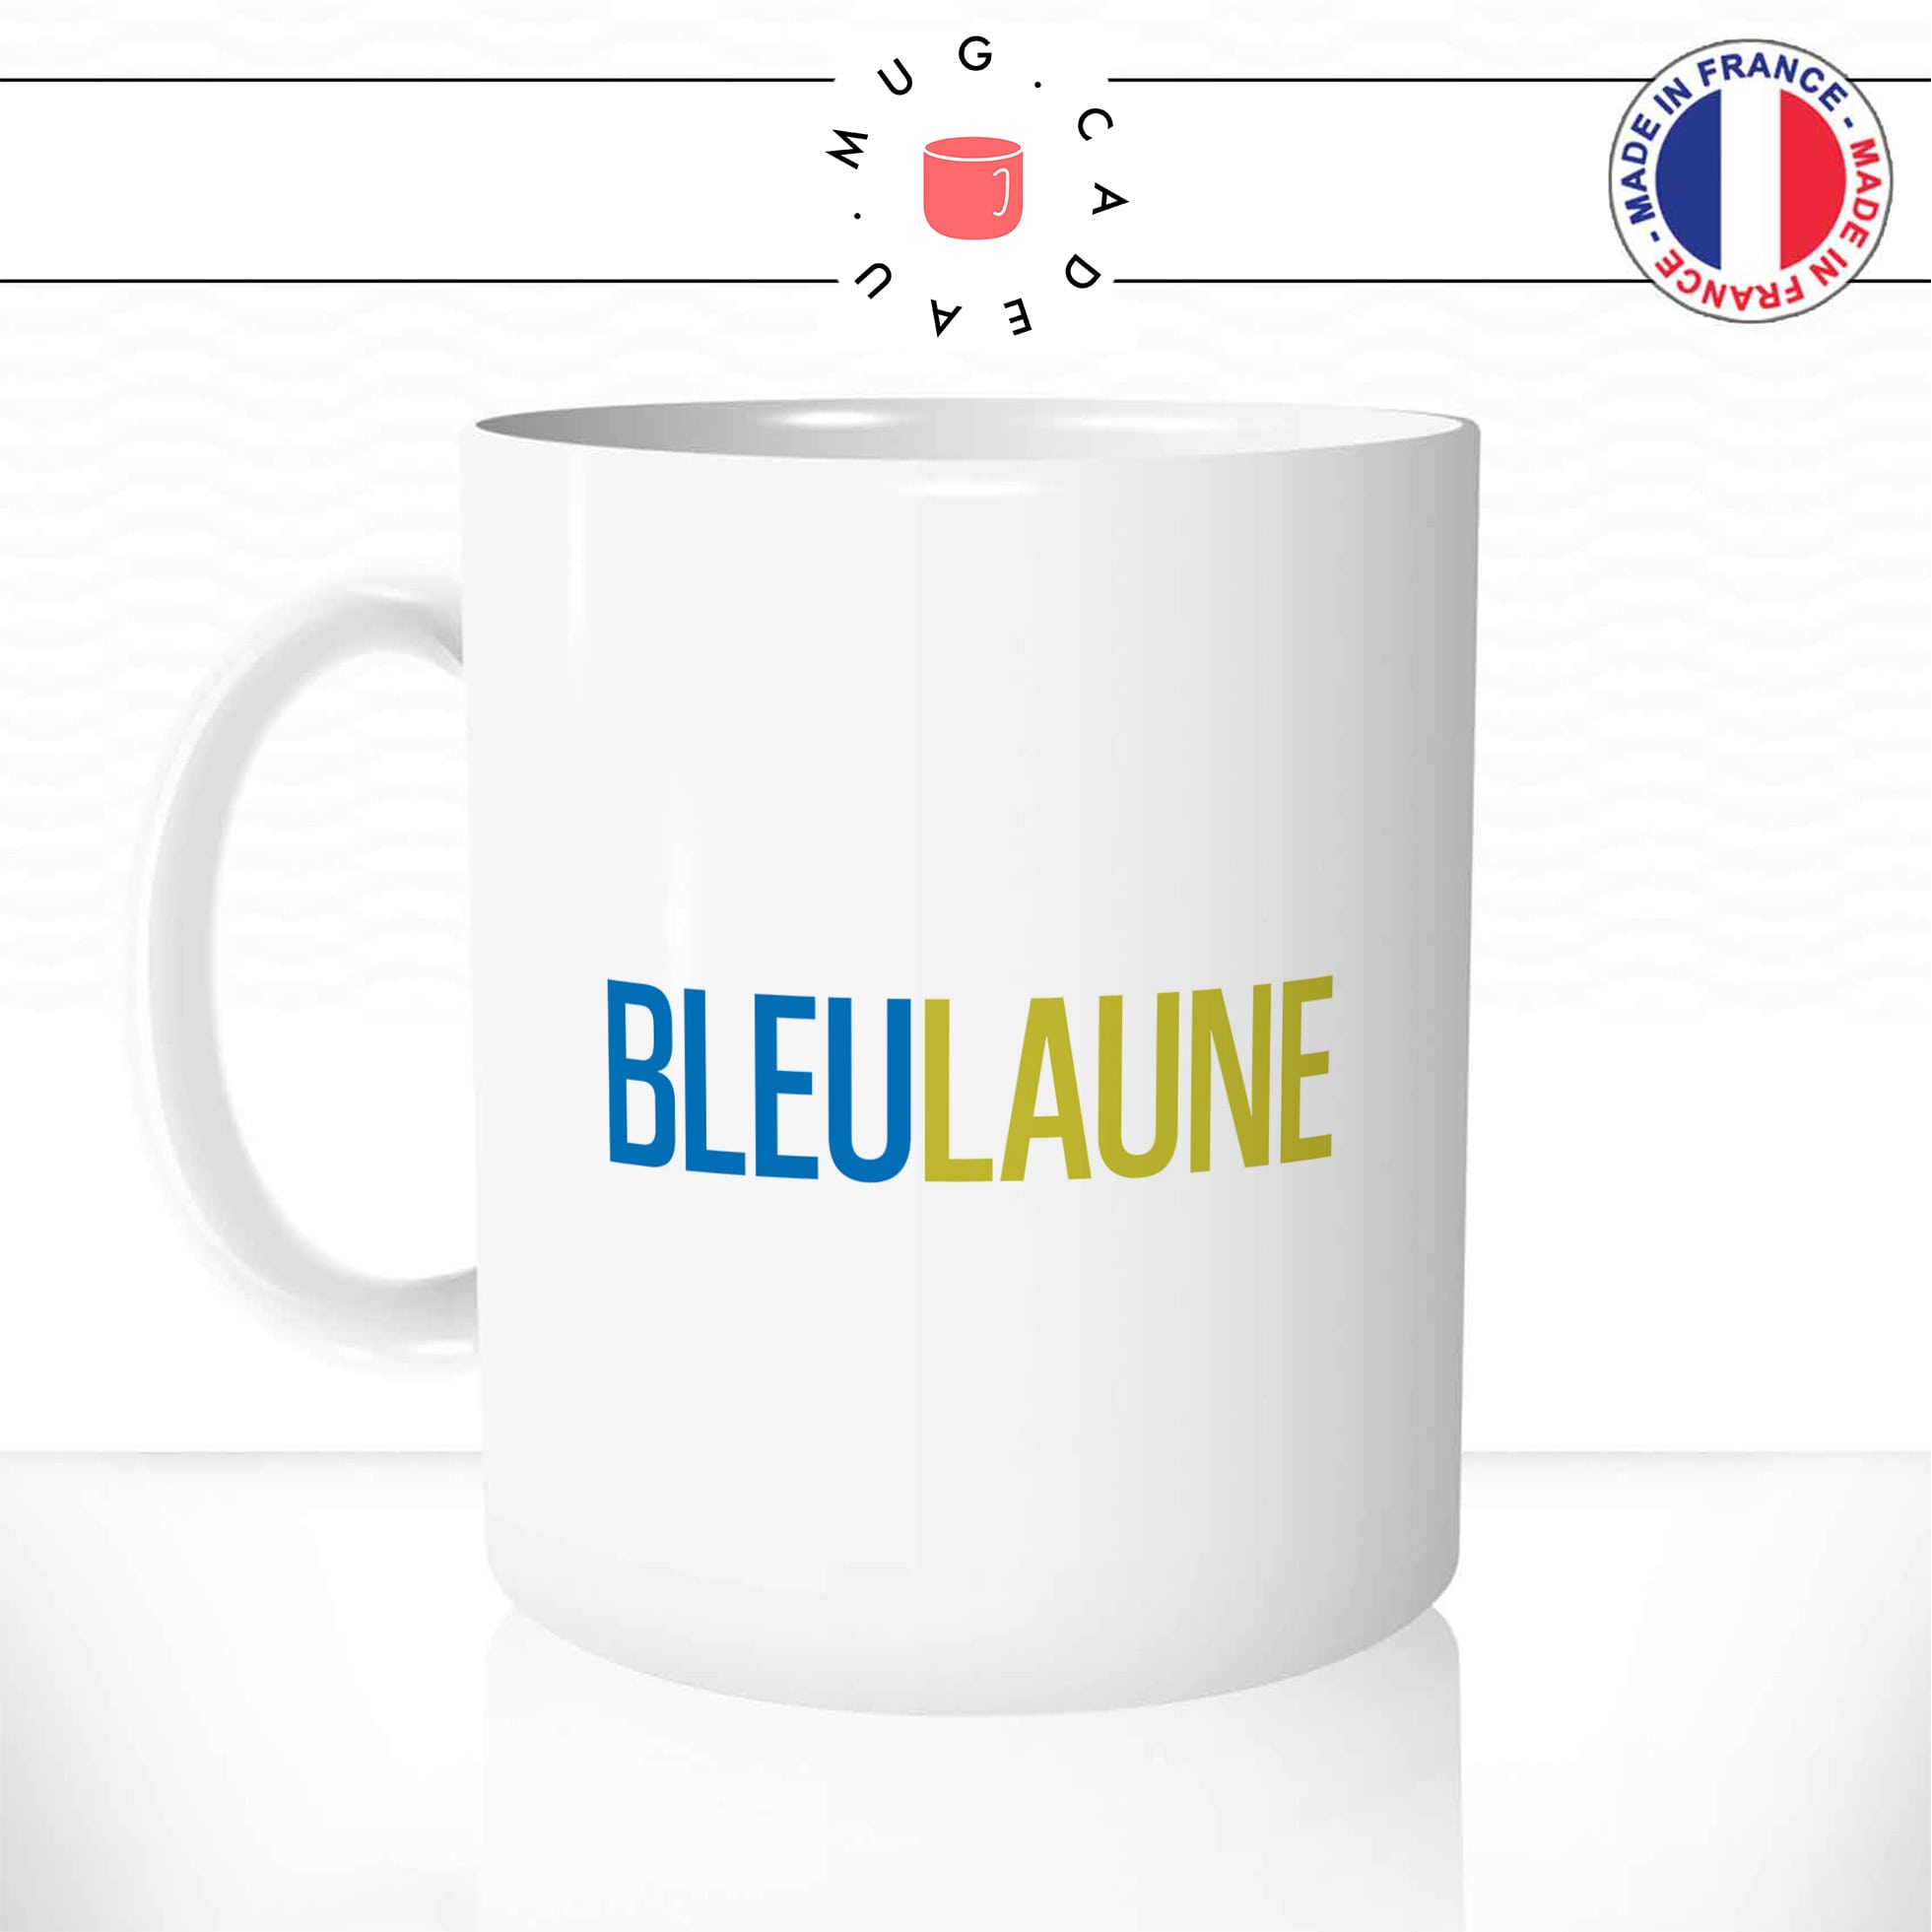 mug-tasse-bleu-jaune-bleulaune-reeze-malcolm-serie-télé-drole-café-thé-humour-fun-idée-cadeau-original-personnalisée-min